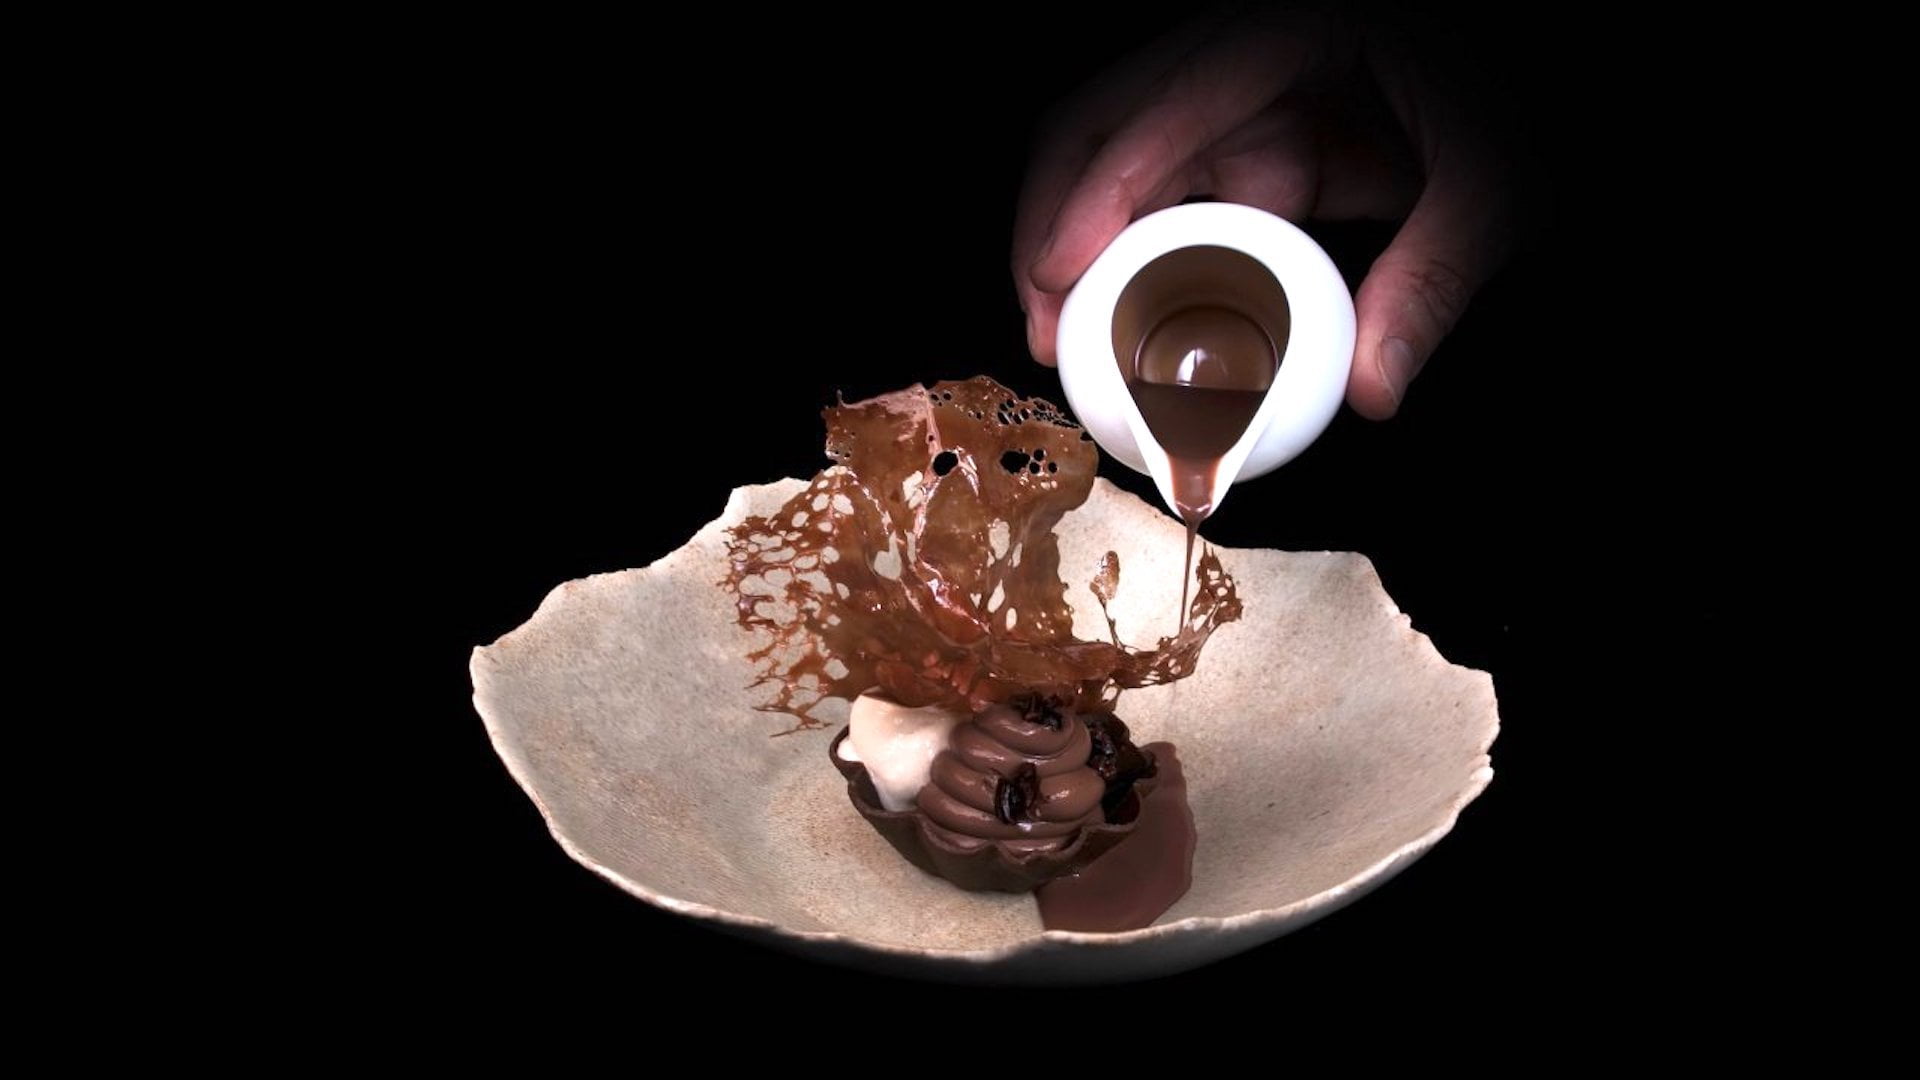 Quest 2: Bestaunt Kochkunst der Spitzenklasse in 8K und 3D